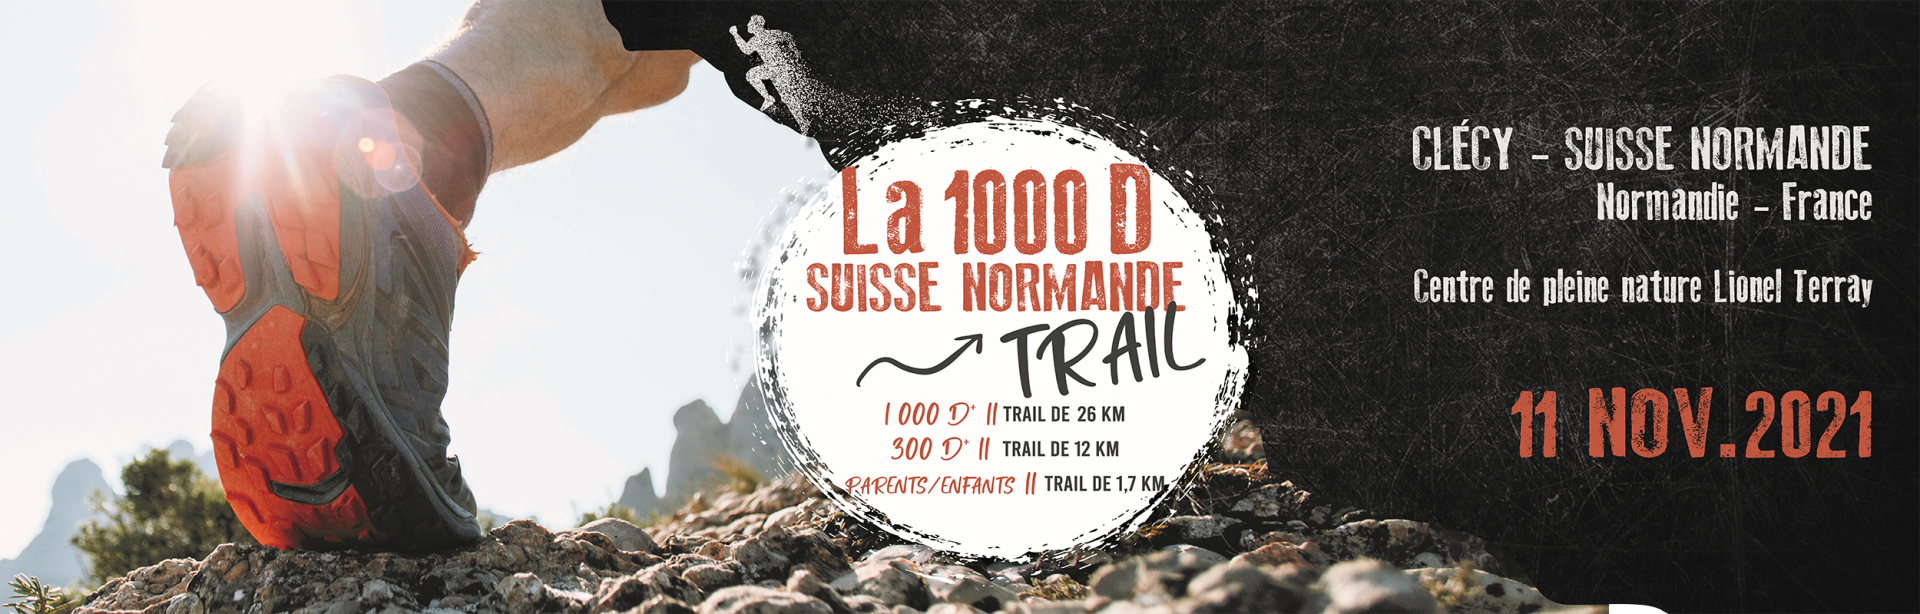 La 1000 D Suisse Normande Trail